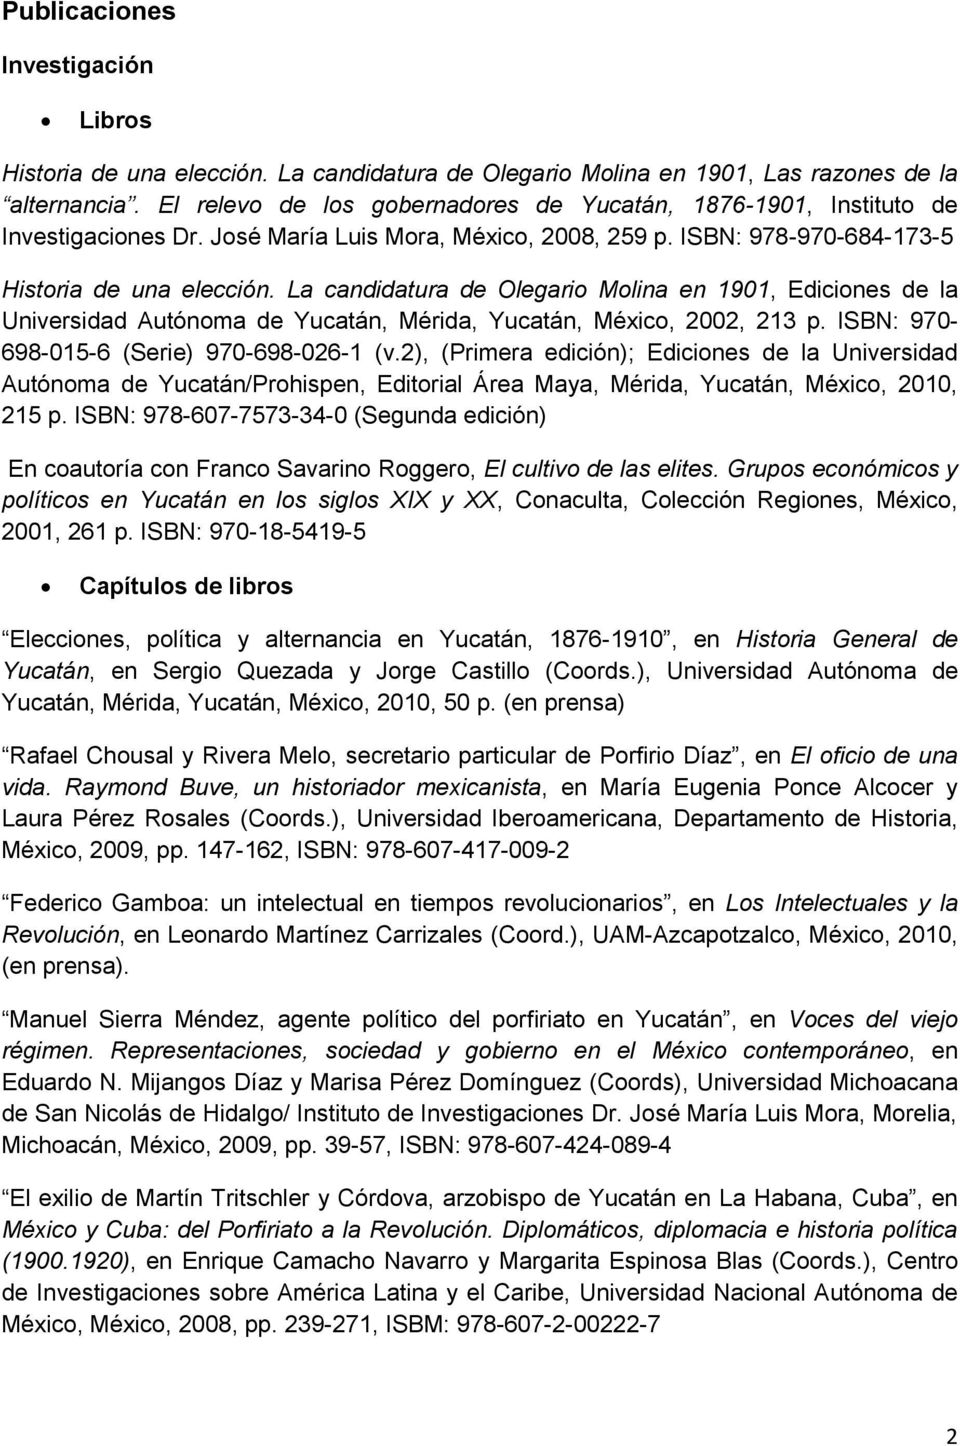 La candidatura de Olegario Molina en 1901, Ediciones de la Universidad Autónoma de Yucatán, Mérida, Yucatán, México, 2002, 213 p. ISBN: 970-698-015-6 (Serie) 970-698-026-1 (v.